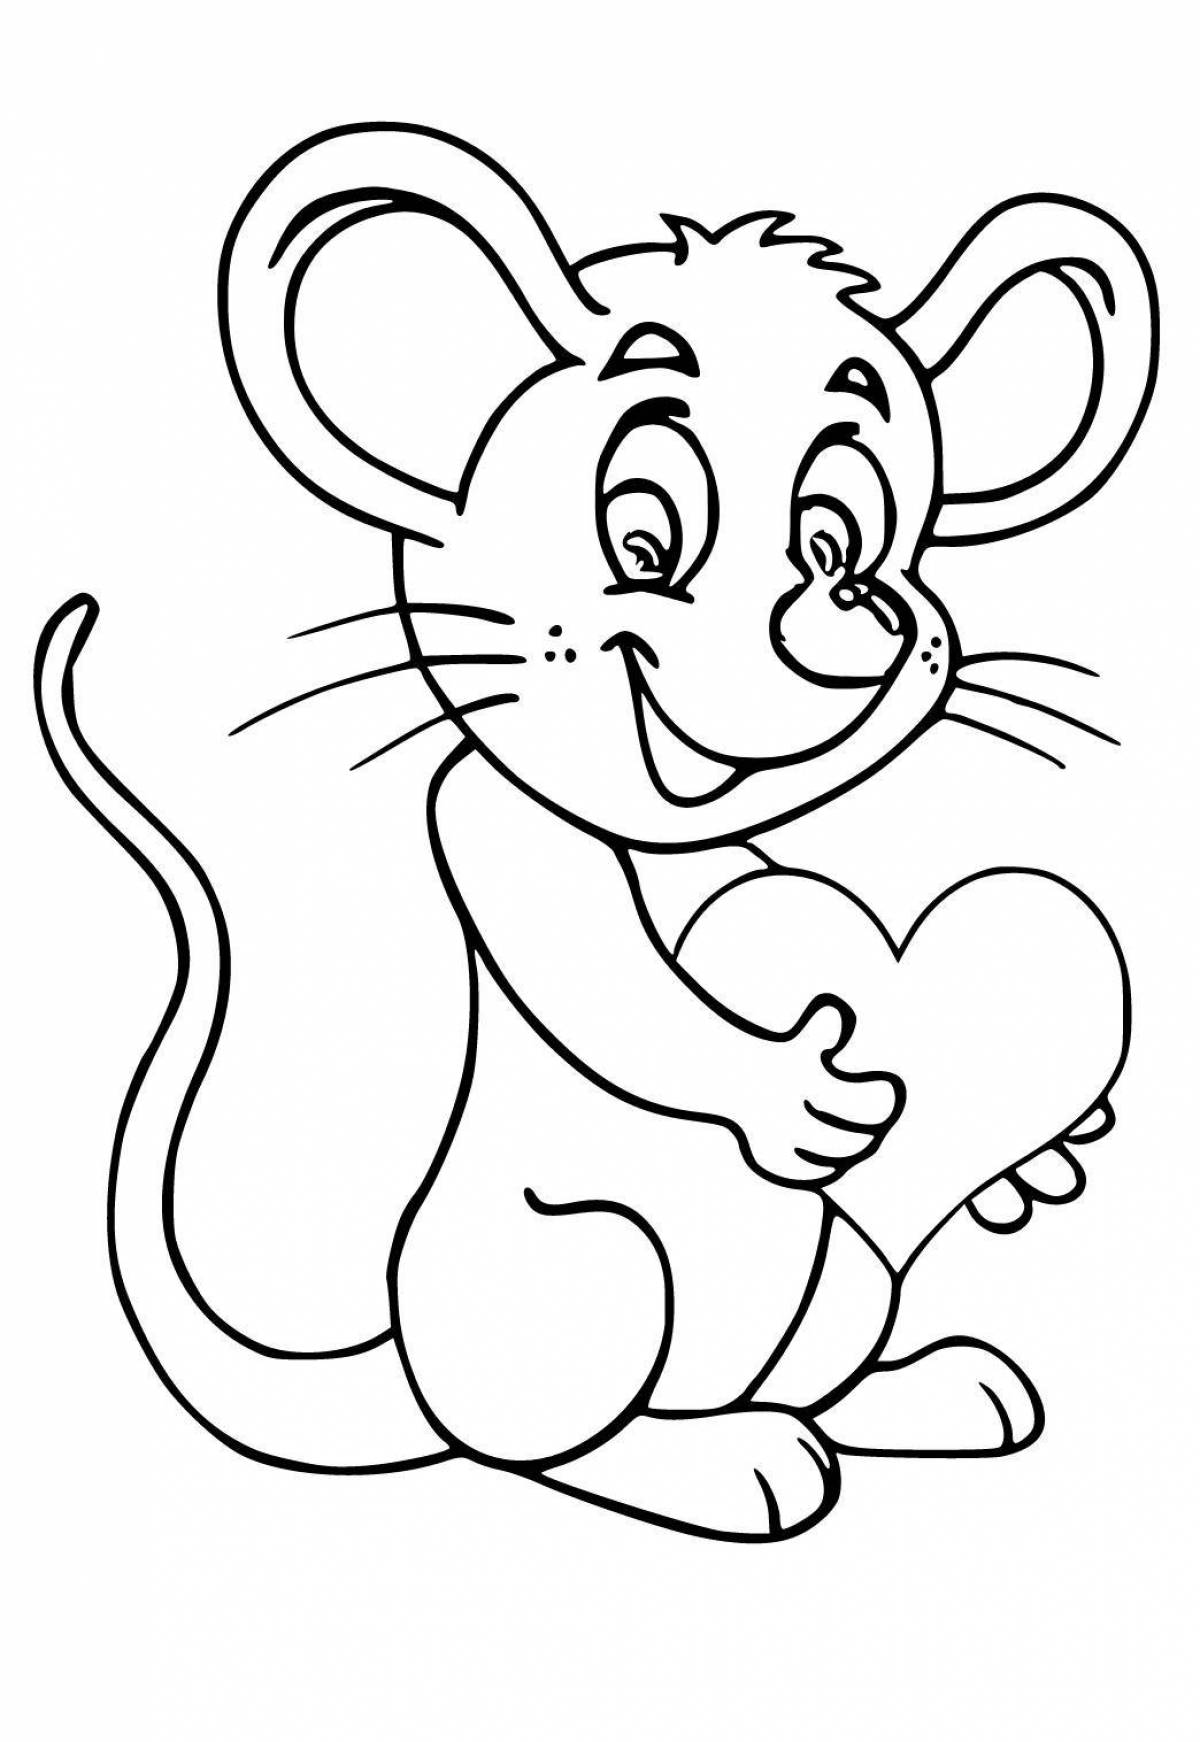 Красочная раскраска мышь для детей 3-4 лет